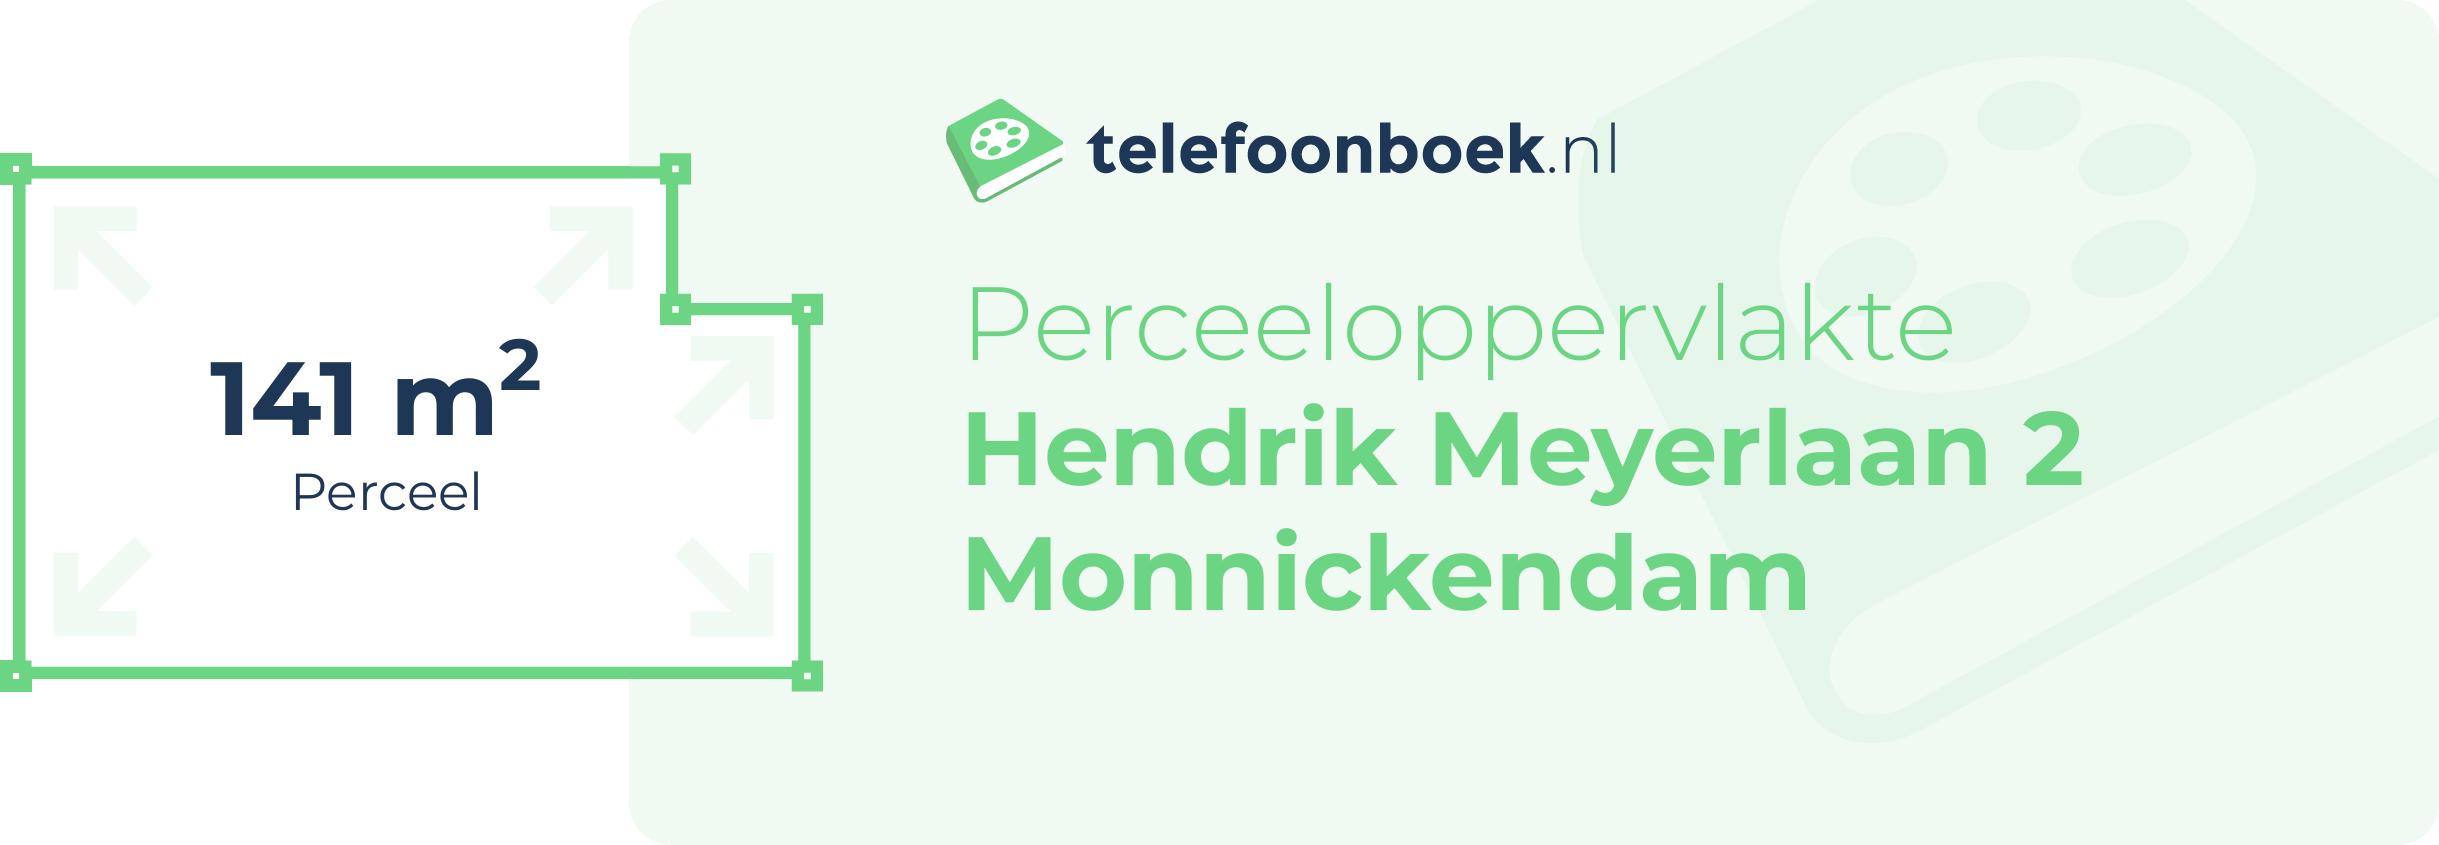 Perceeloppervlakte Hendrik Meyerlaan 2 Monnickendam